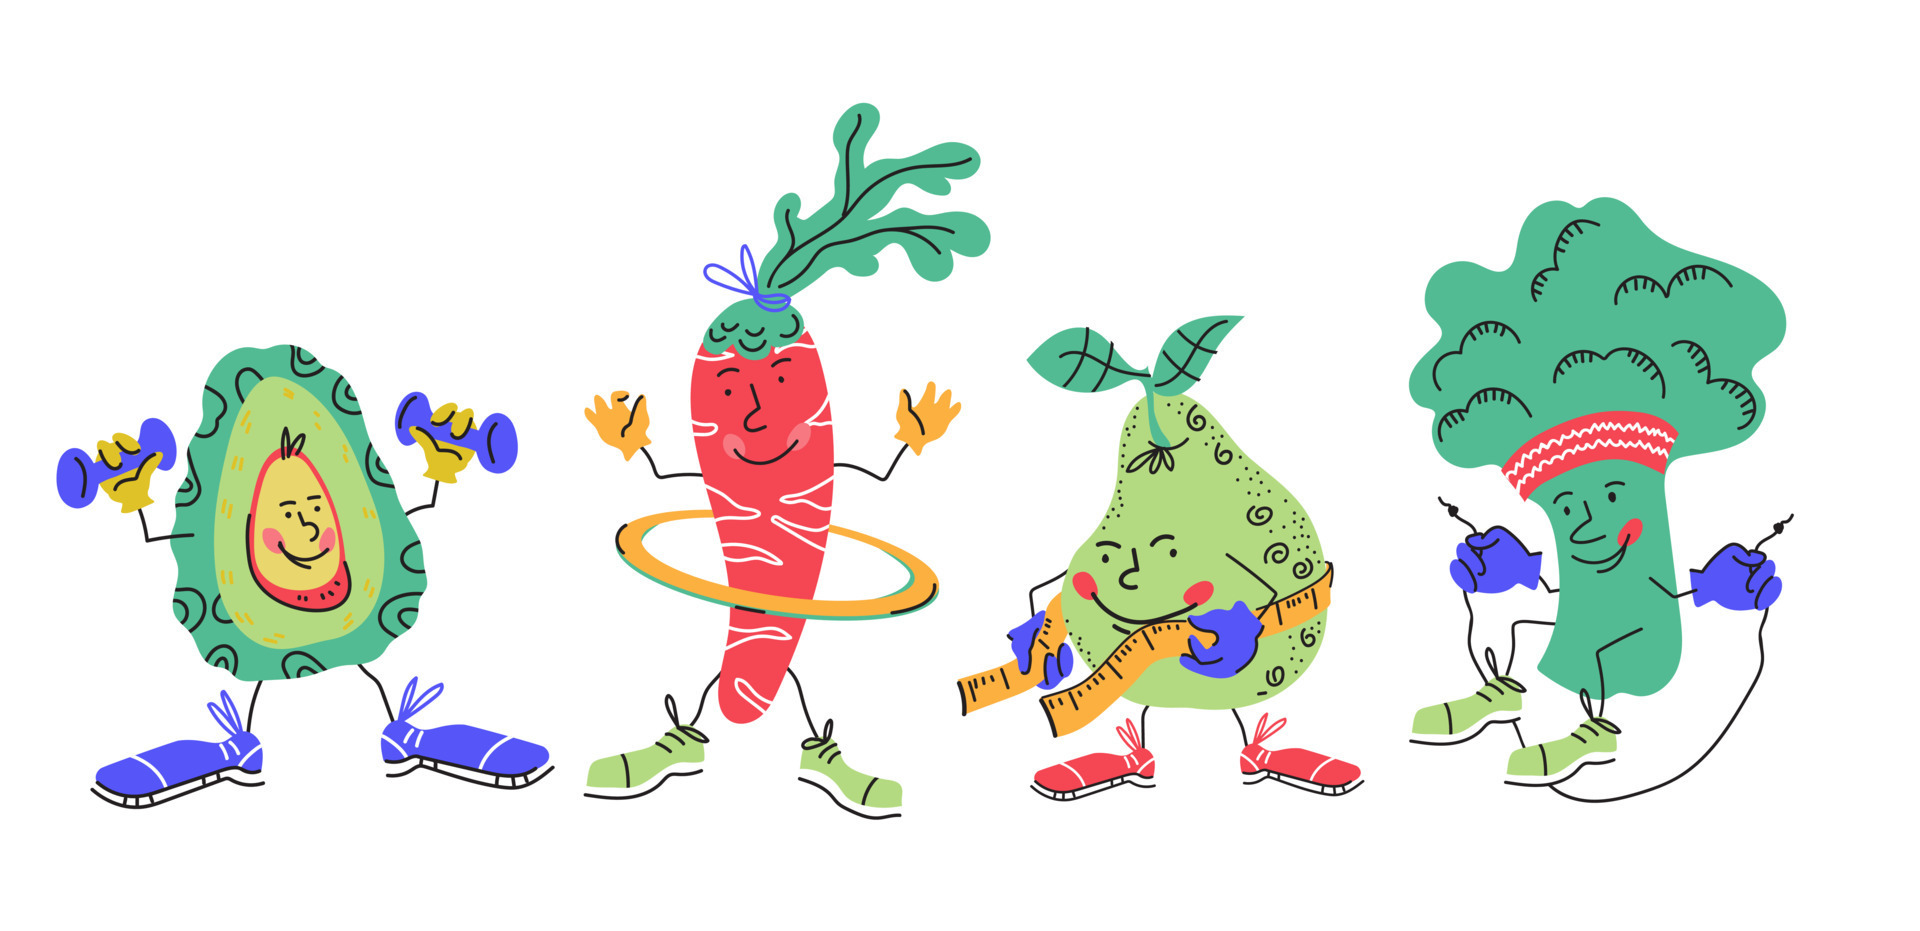 Fitness vegetais personagens de desenhos animados imagem vetorial